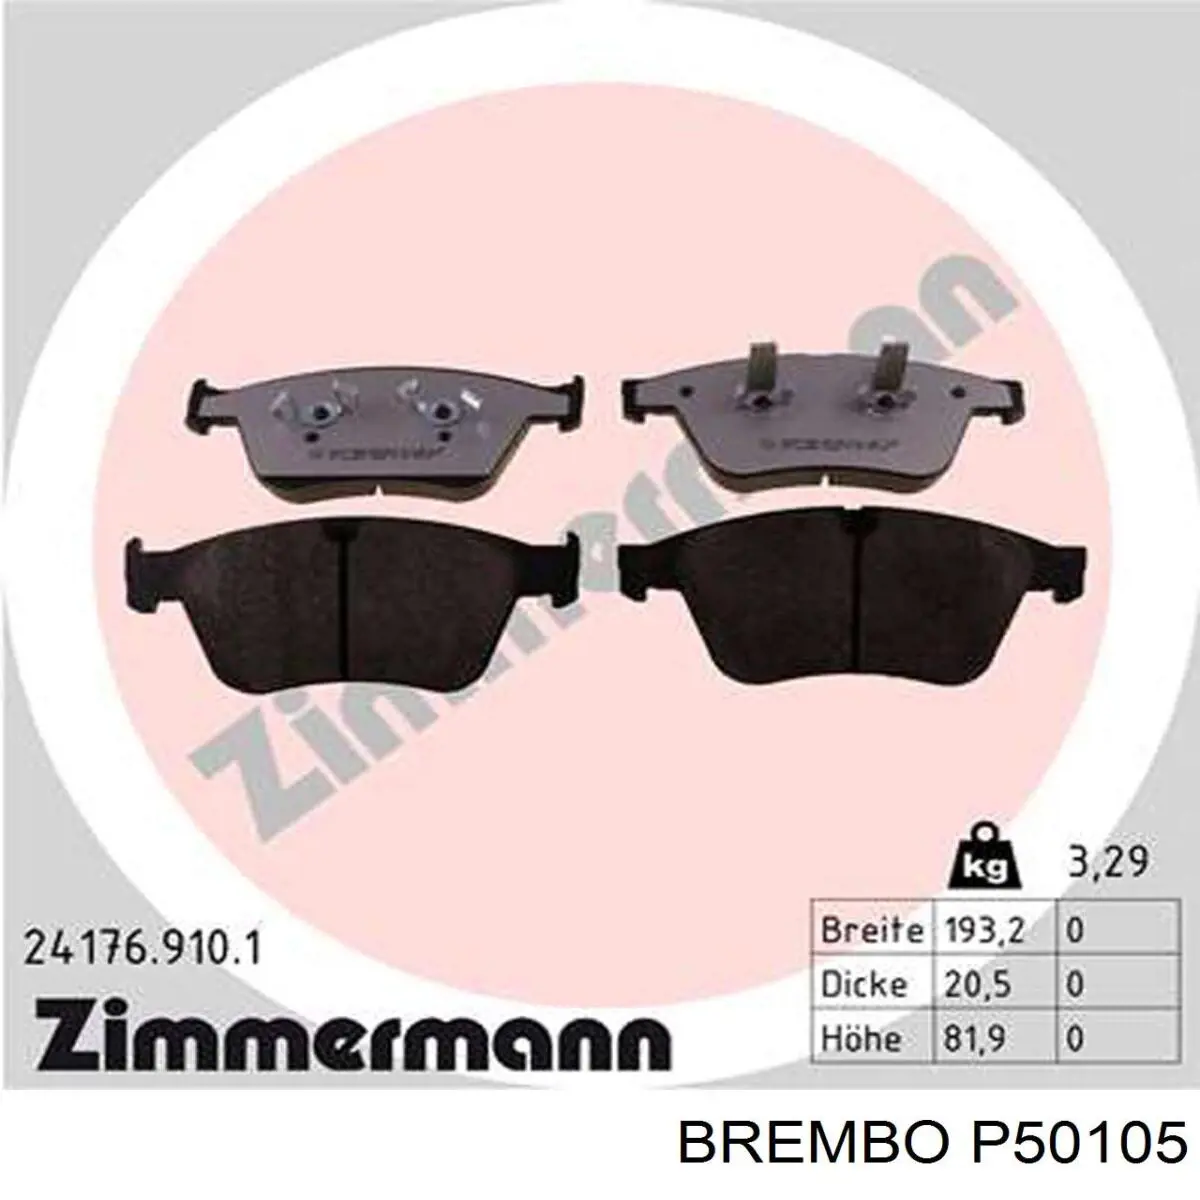 P50105 Brembo колодки тормозные передние дисковые